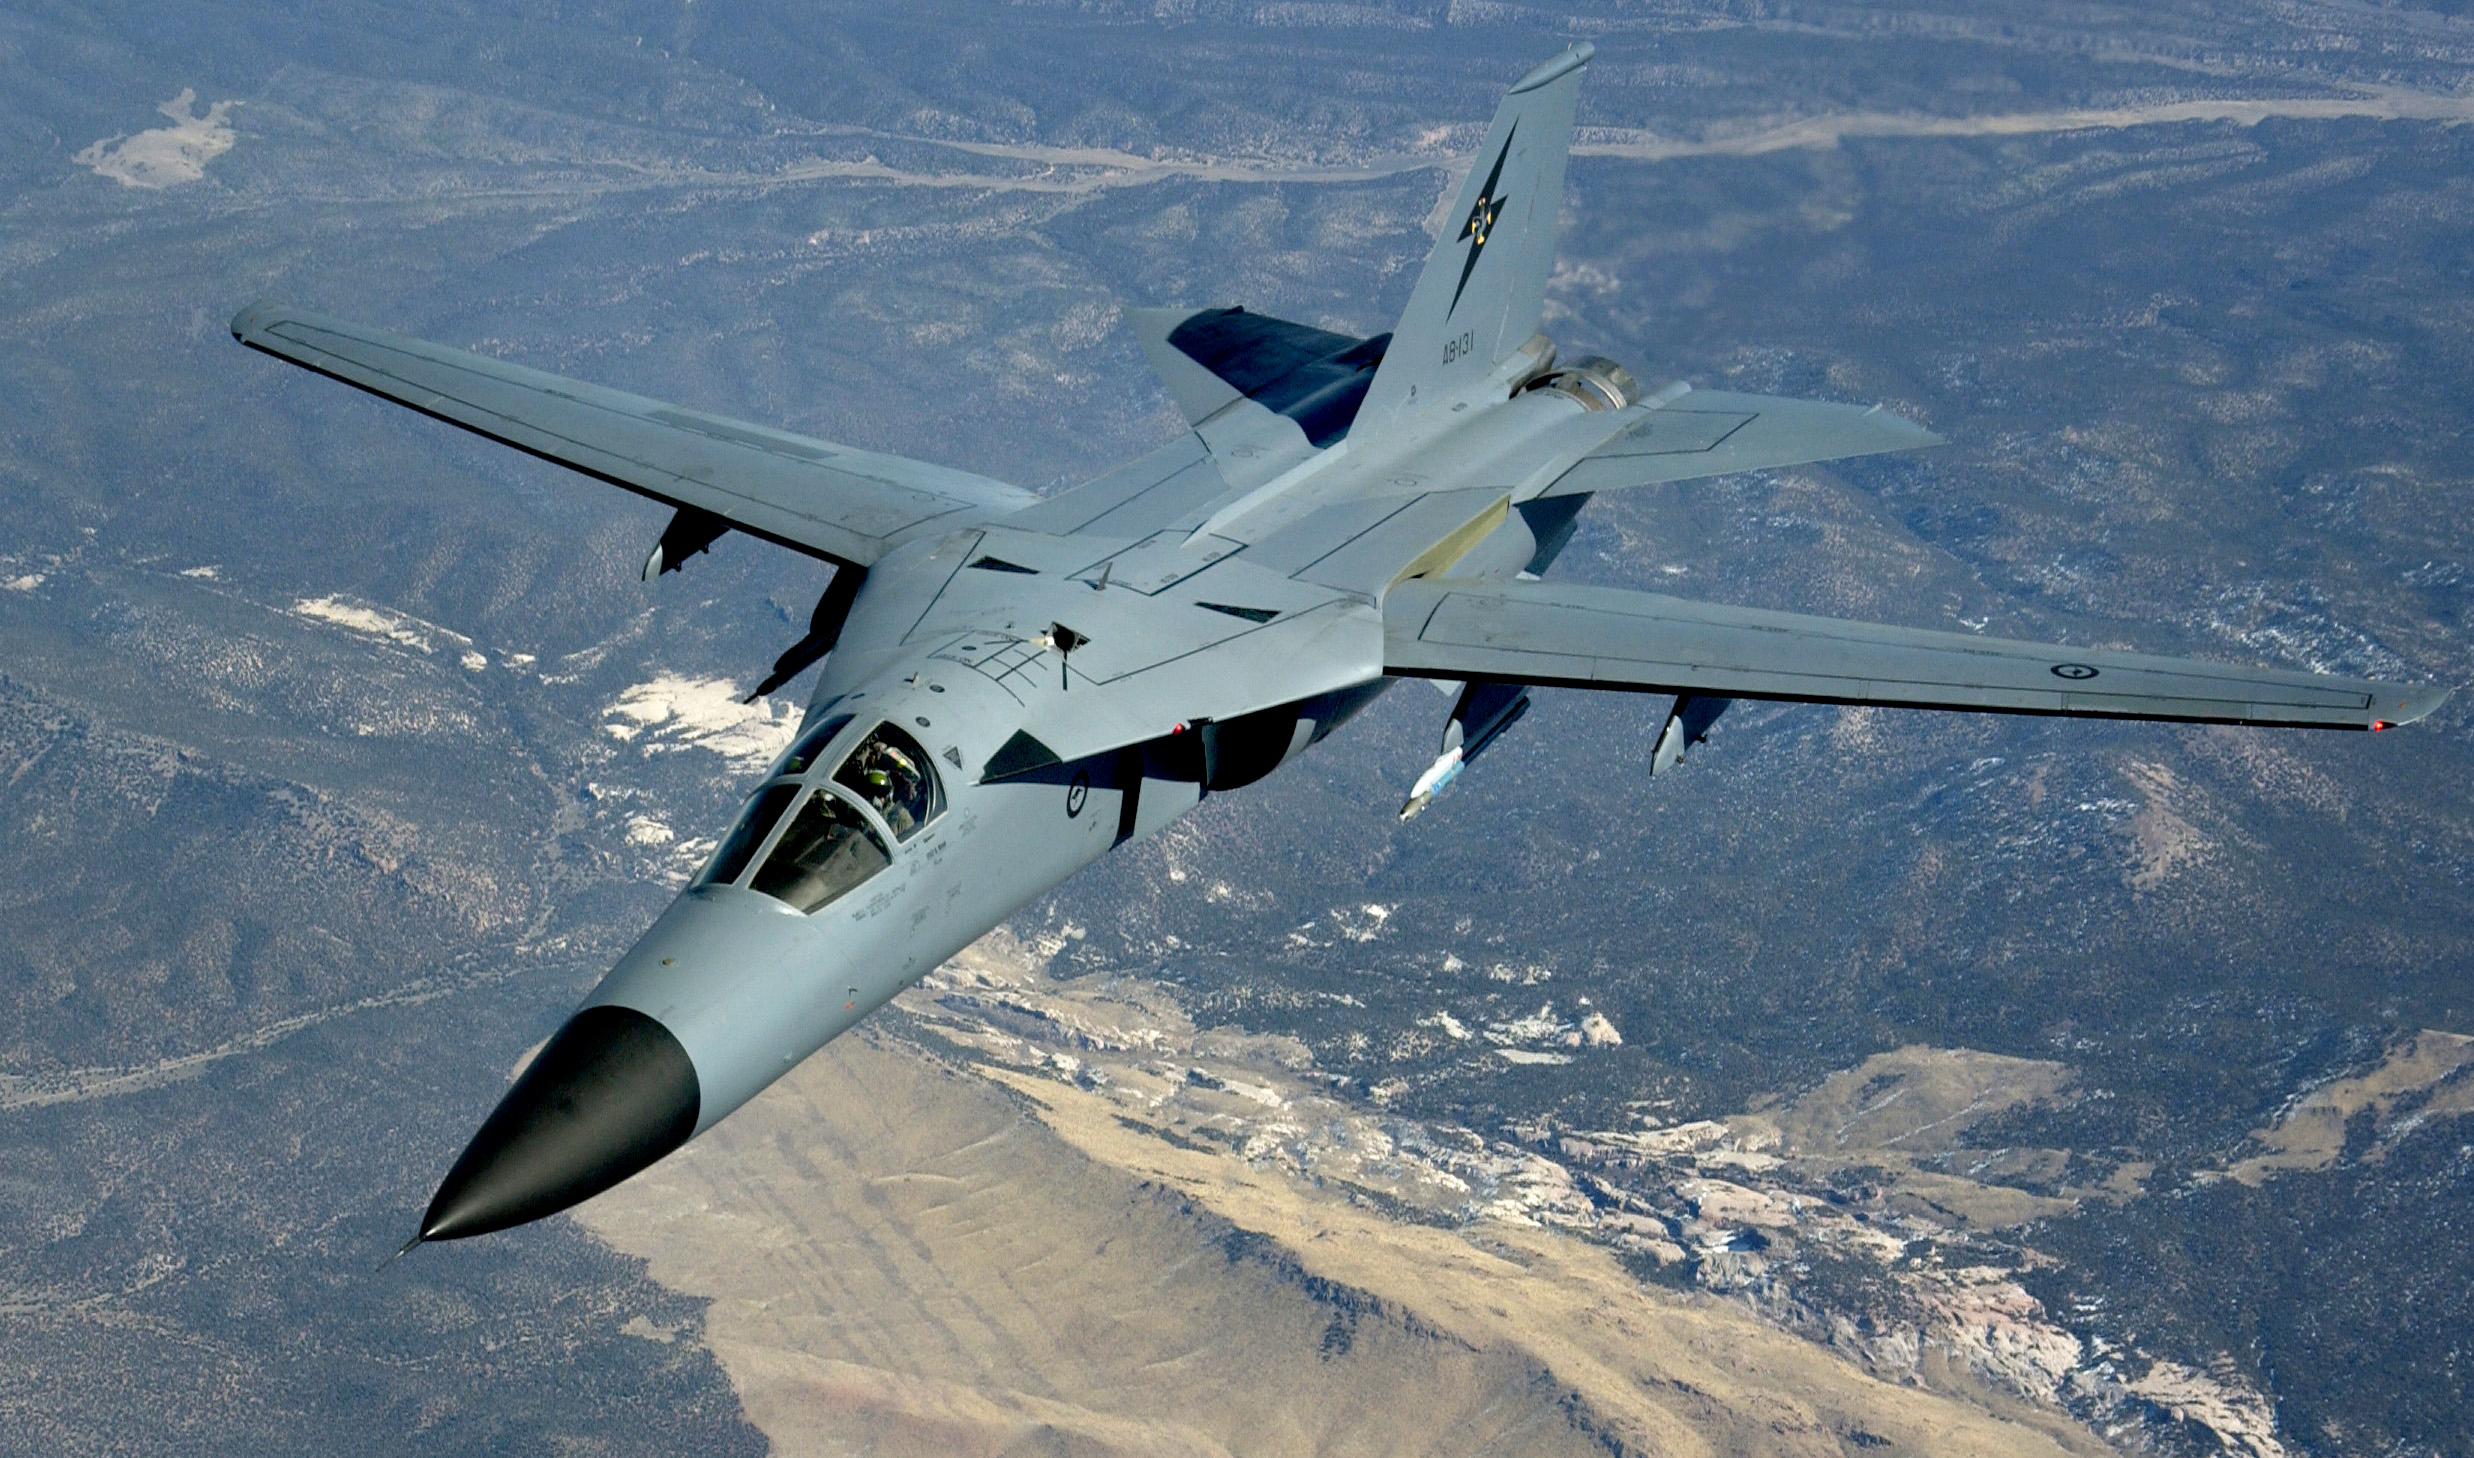 самолет, военный, самолеты, реактивный самолет, F - 111 Aardvark - обои на рабочий стол